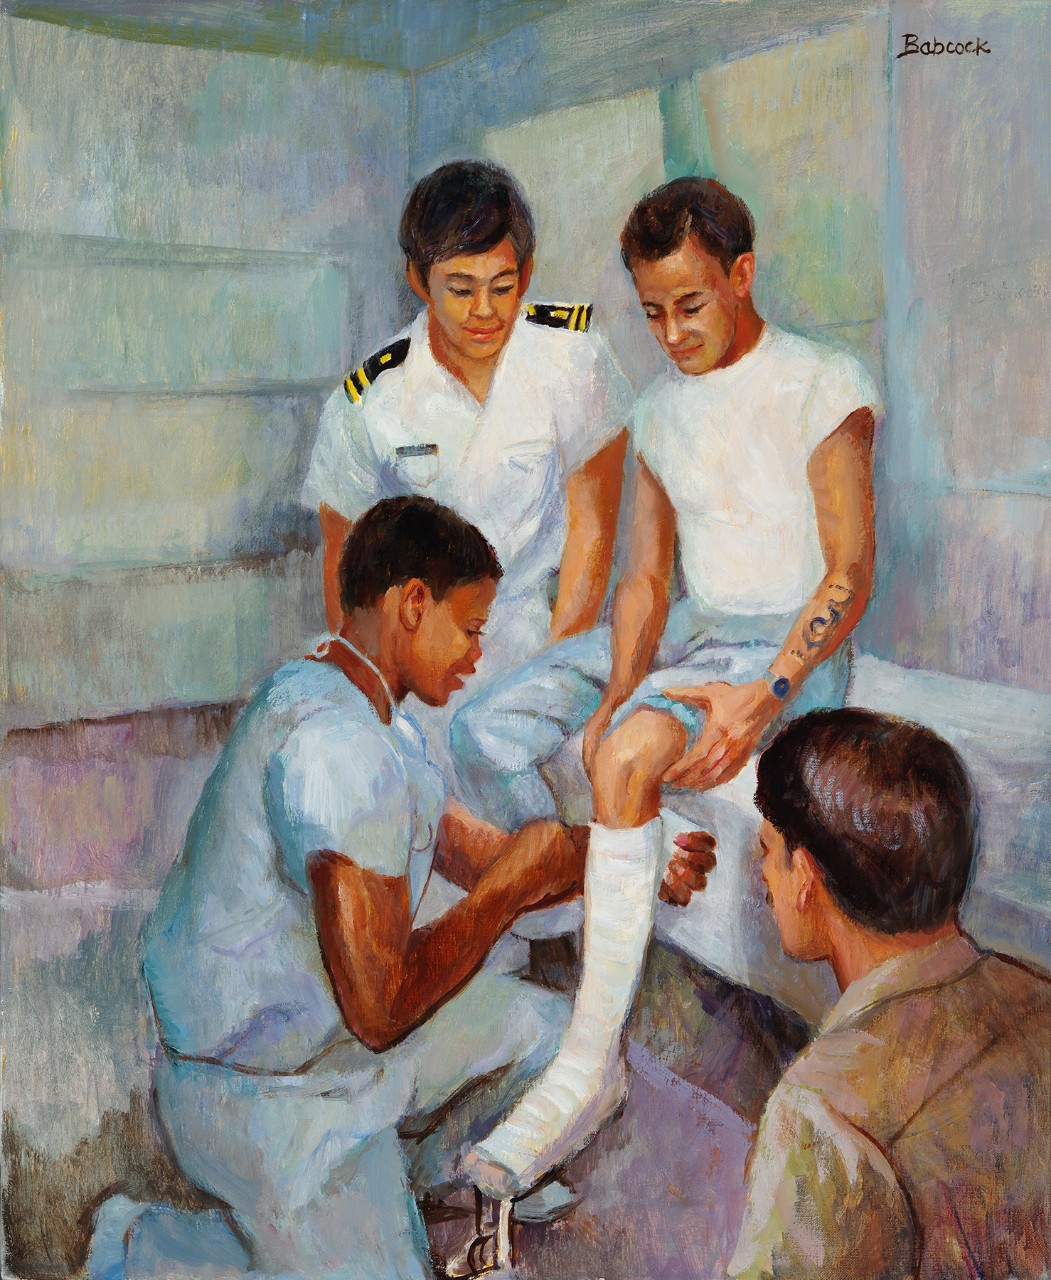 An African American nurse applies a cast to a sailors leg